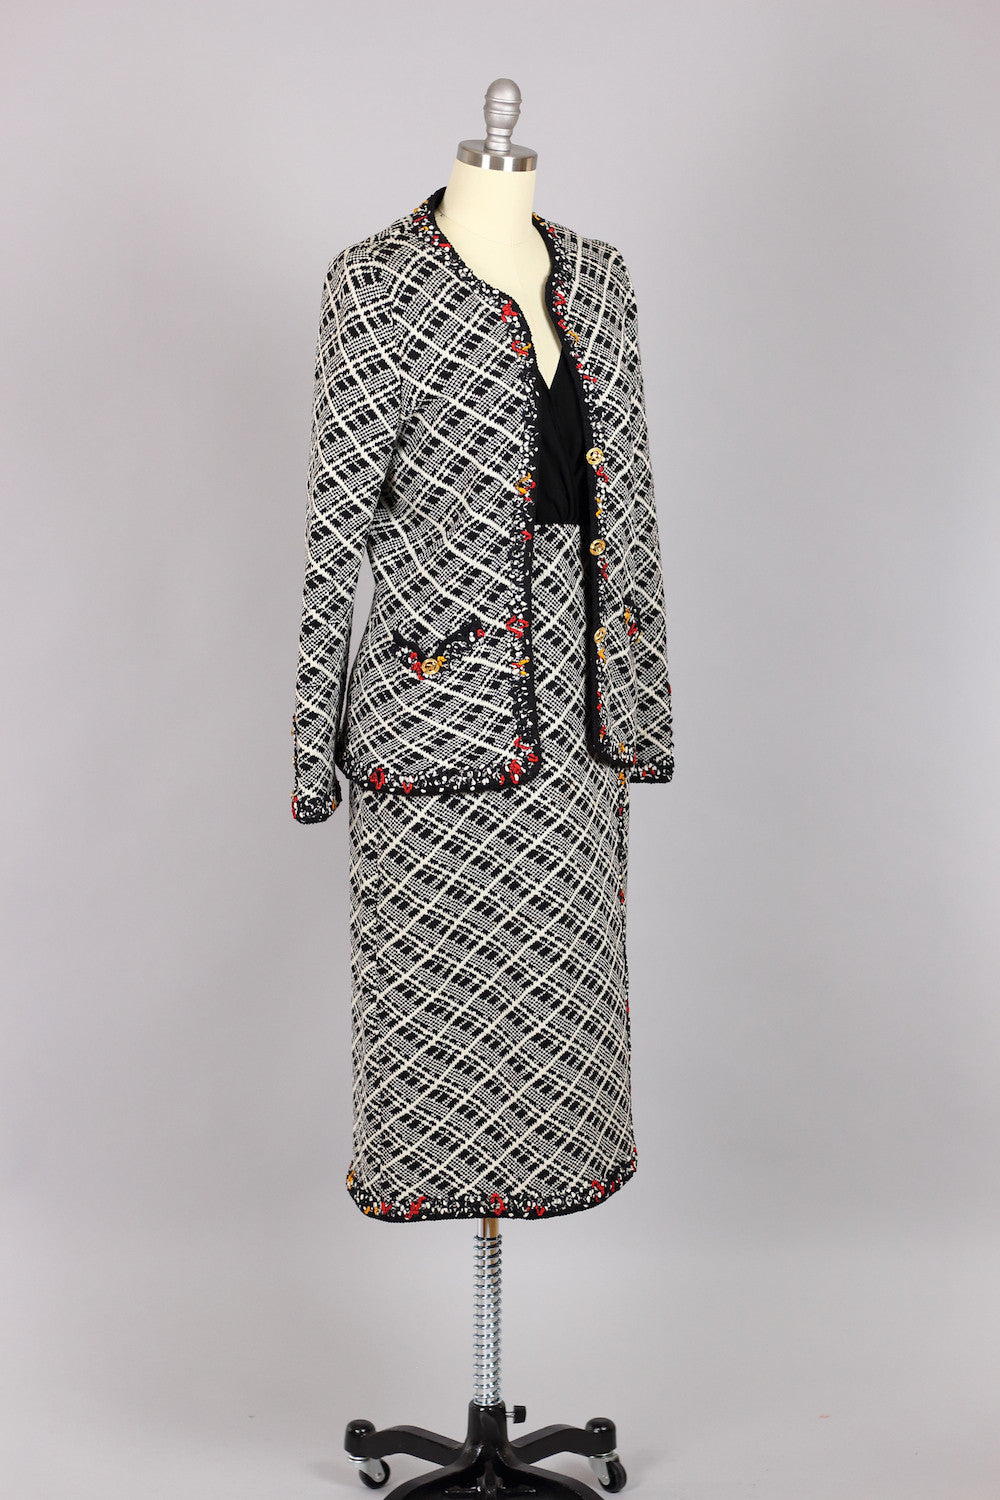 Vintage 1960s Adolfo Herringbone Wool Suit